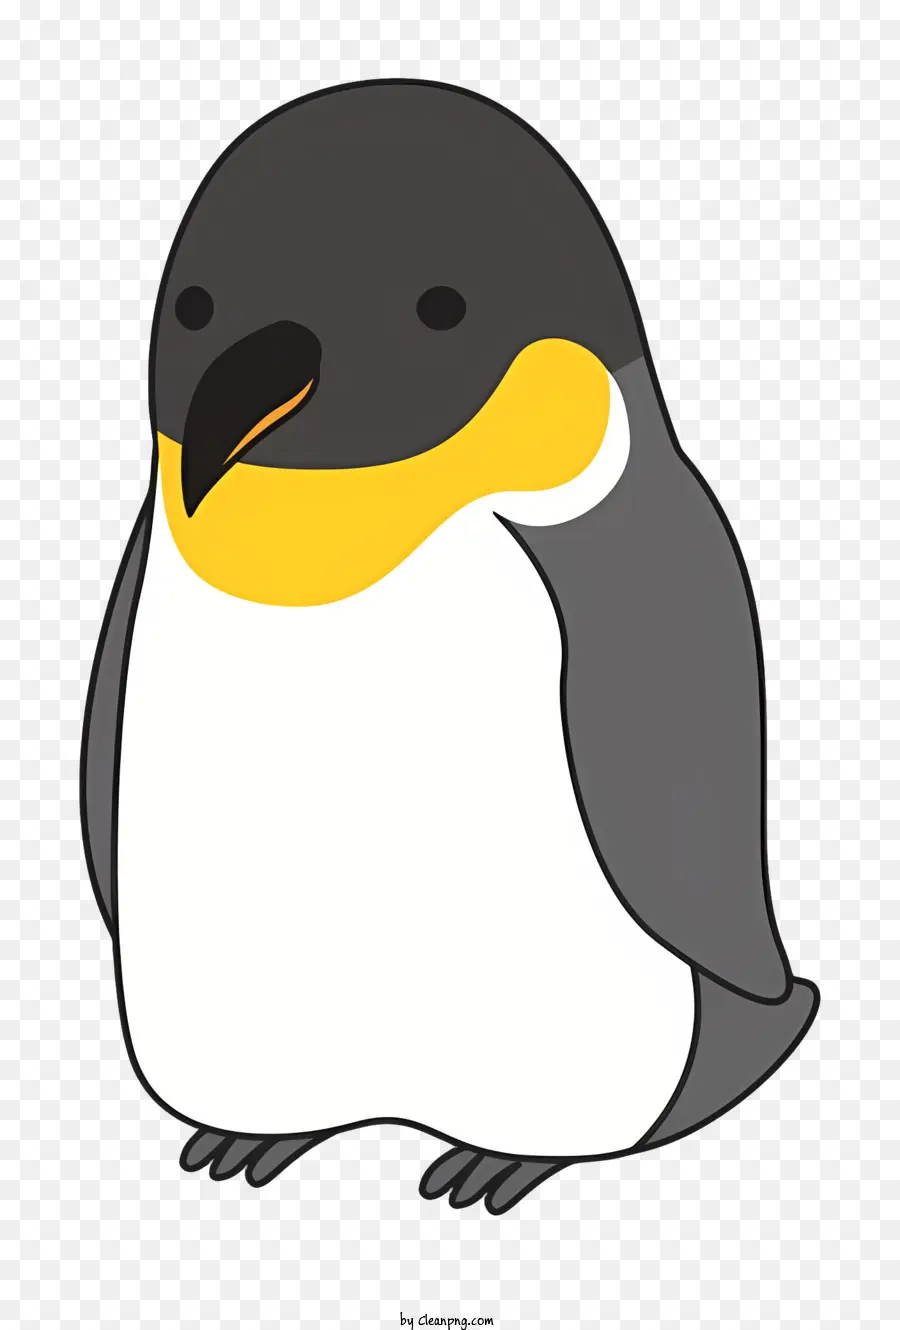 Pinguino - Pinguino bianco e nero con becco giallo